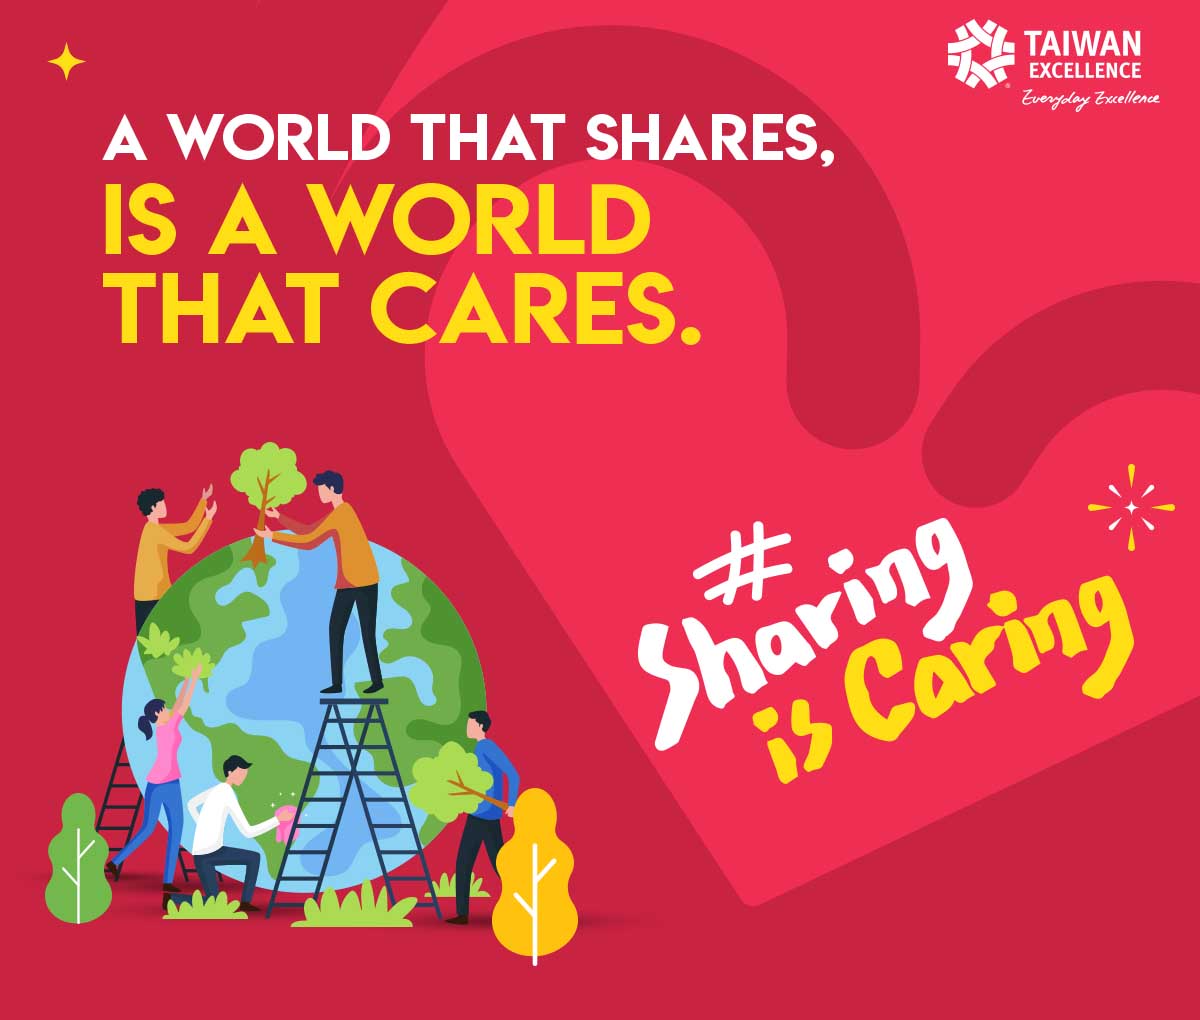 Cùng Taiwan Excellence thay đổi thế giới  với dự án #SharingisCaring